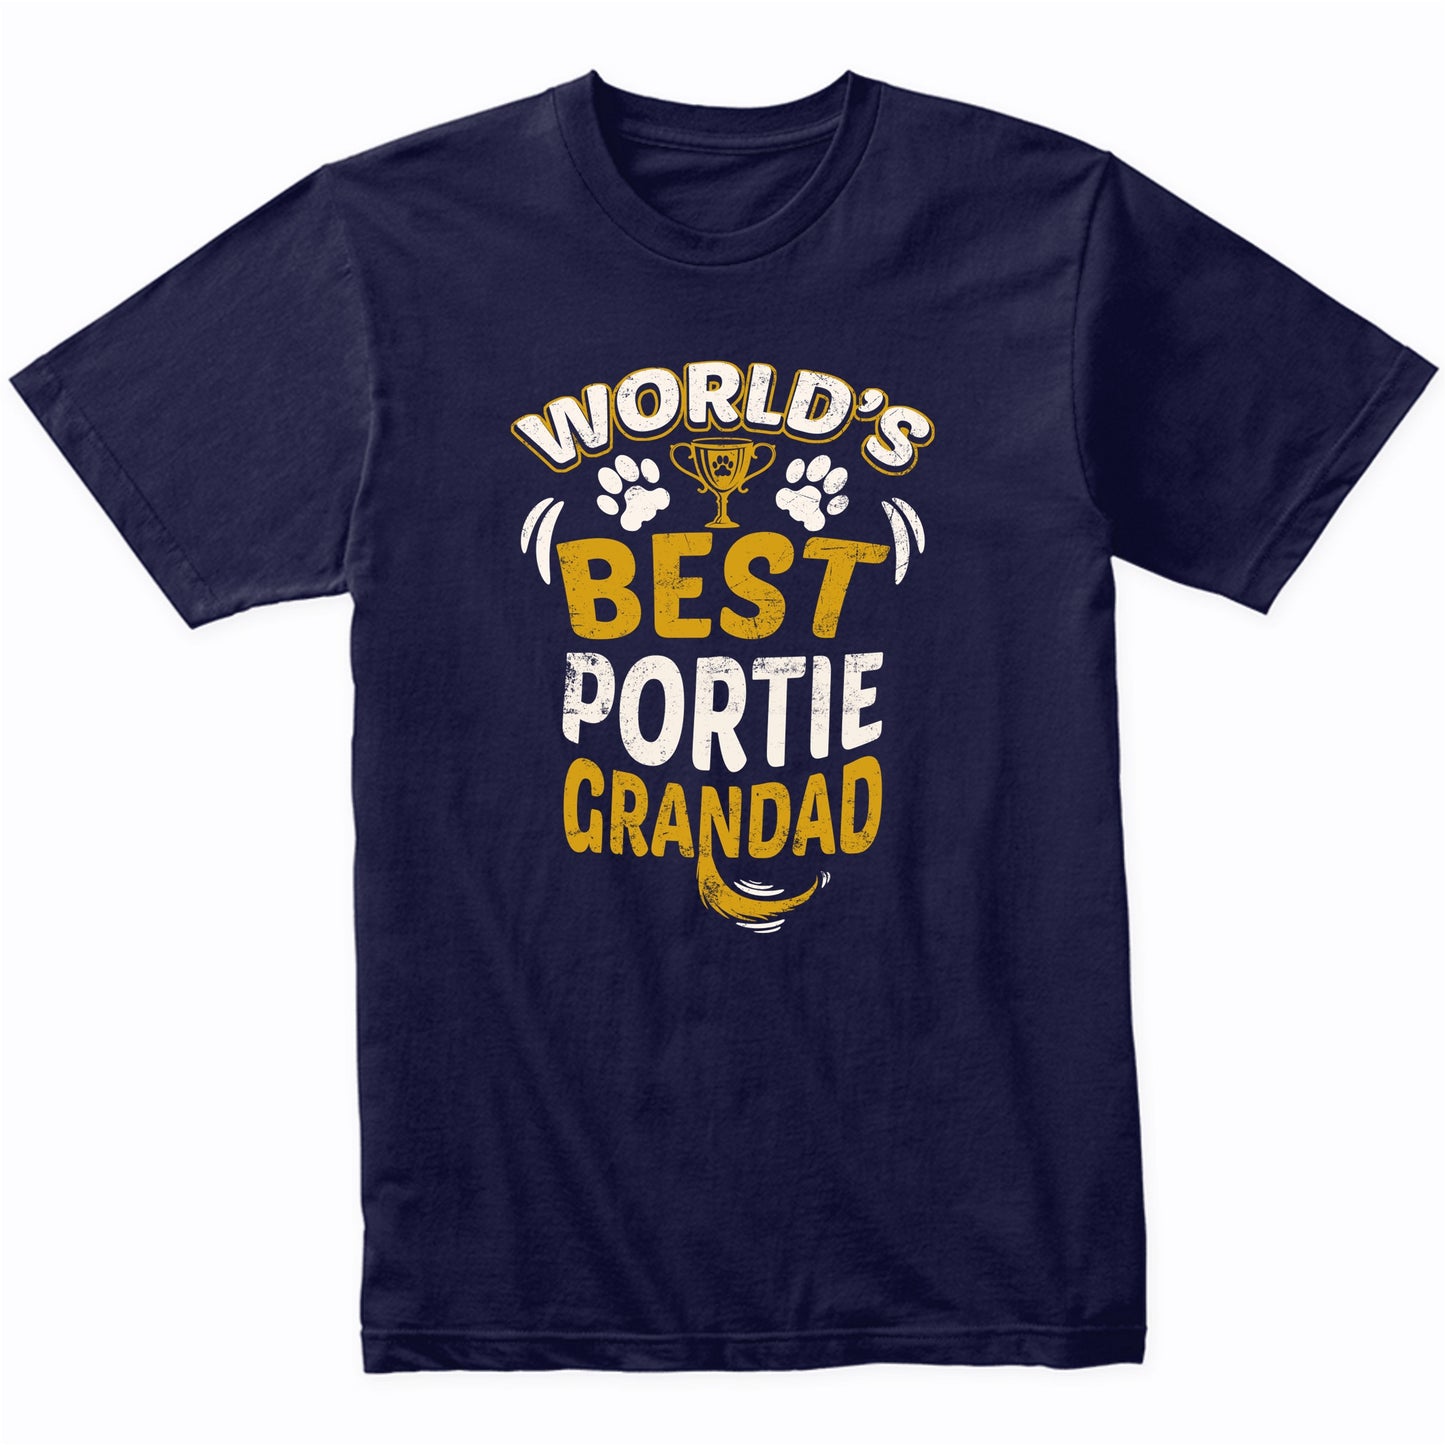 World's Best Portie Grandad Graphic T-Shirt